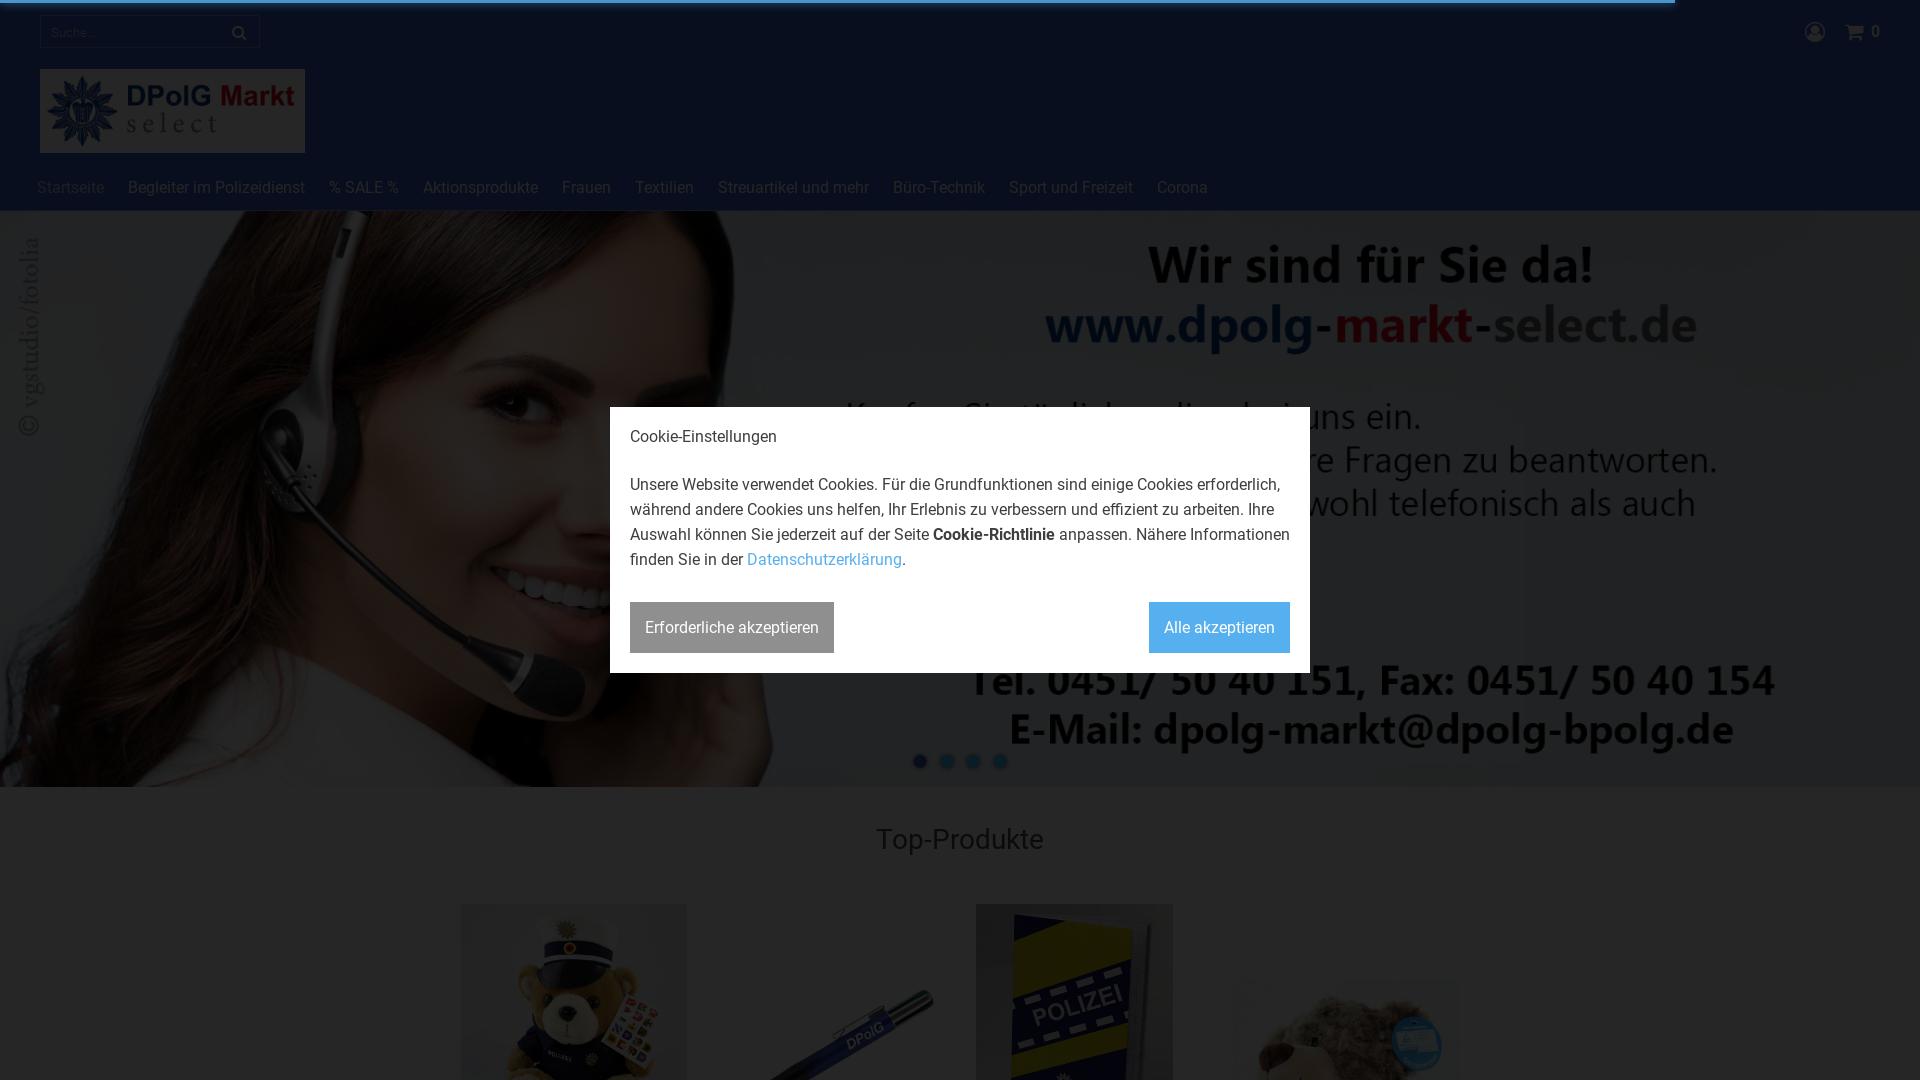 Website User Bewertung zu www.dpolg-markt-select.de